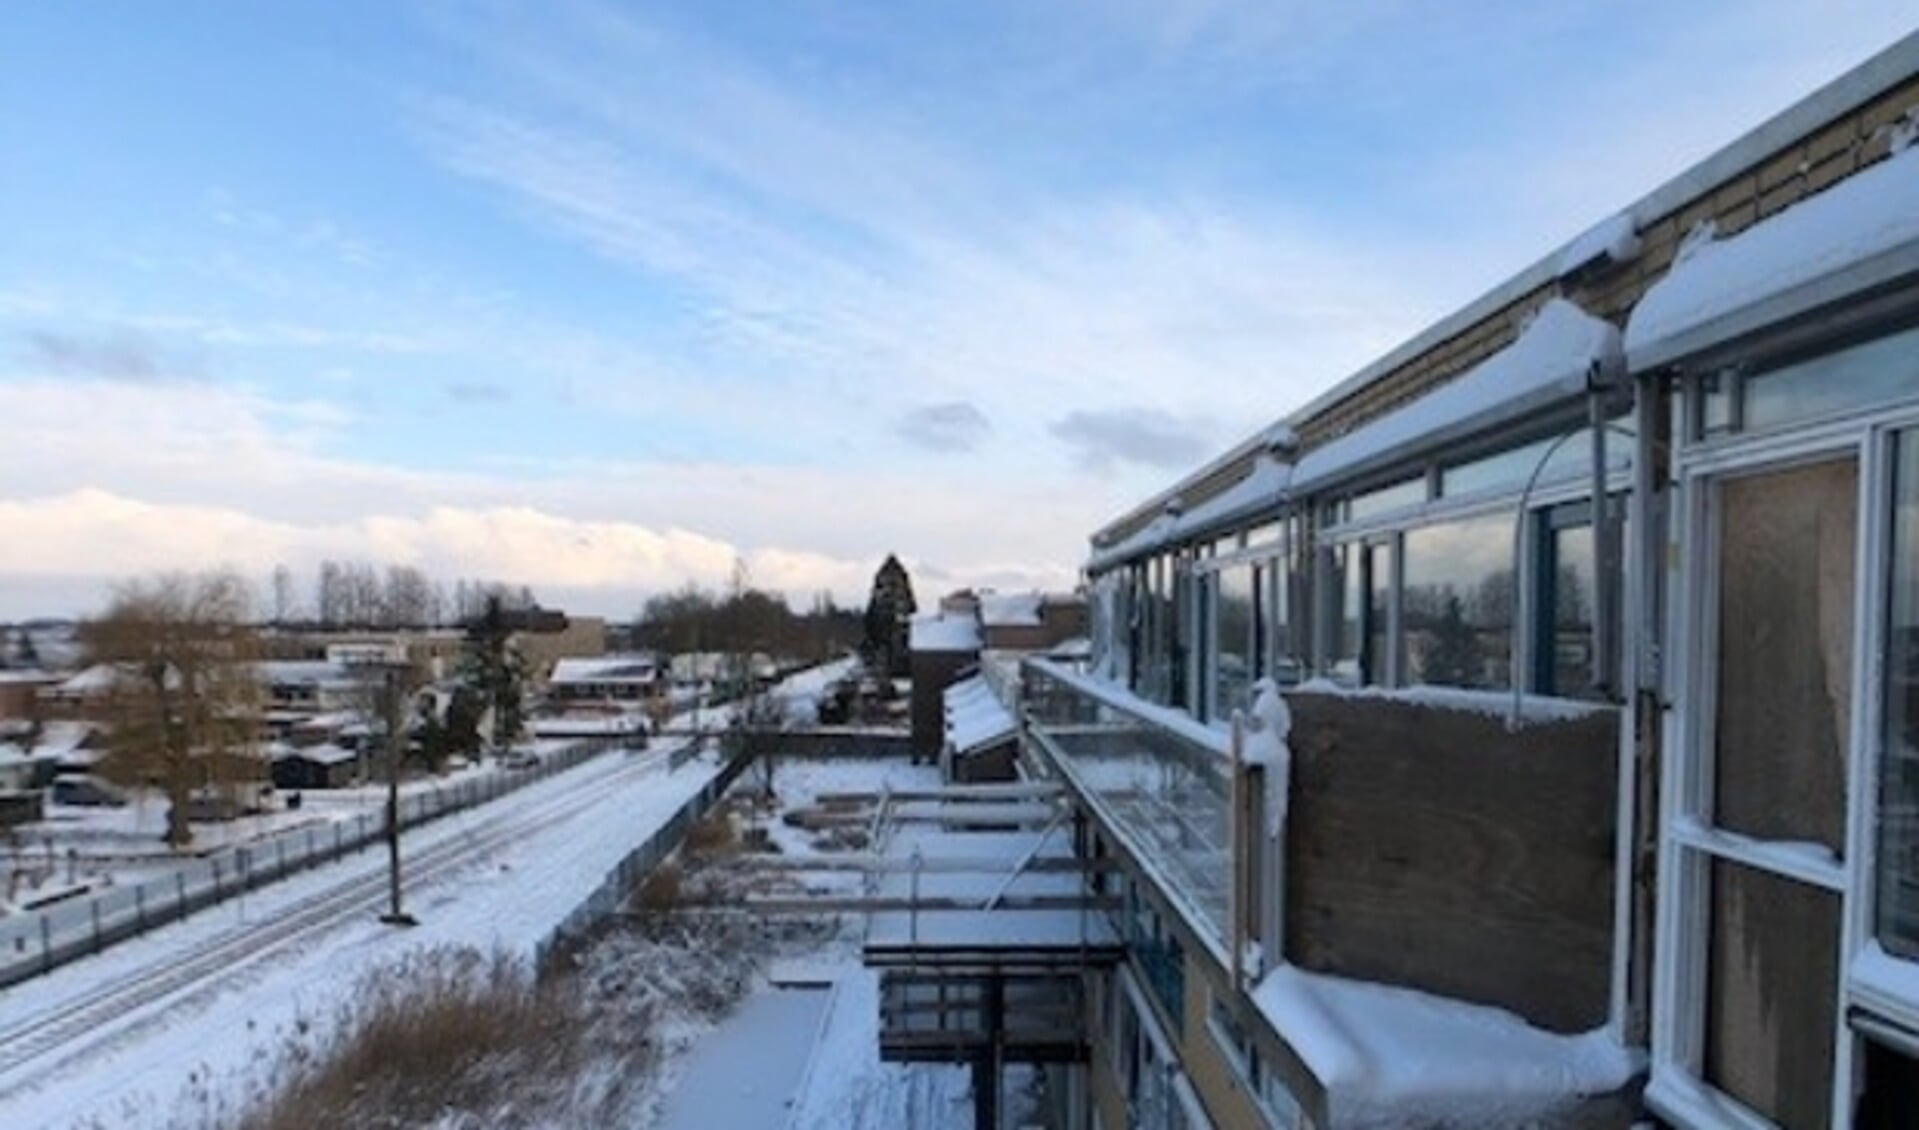 Aan de woonkamers van het zorgcentrum Floravita zijn ruime balkons geplaatst. Foto: Floravita